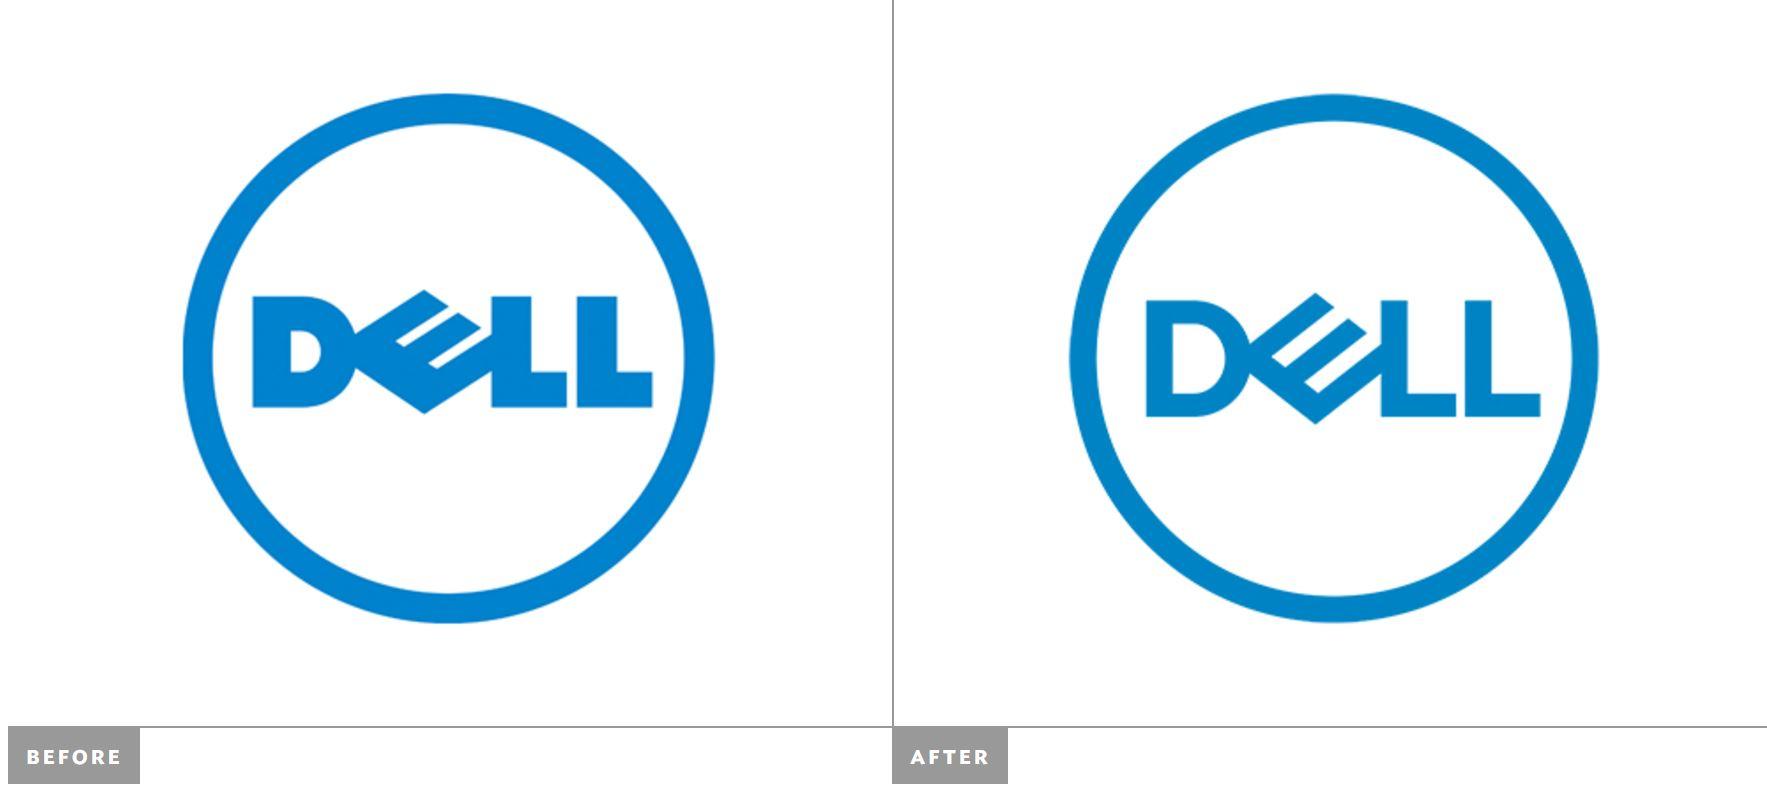 New Dell Logo - Download DELL 2016 vector logo (.EPS + .SVG)